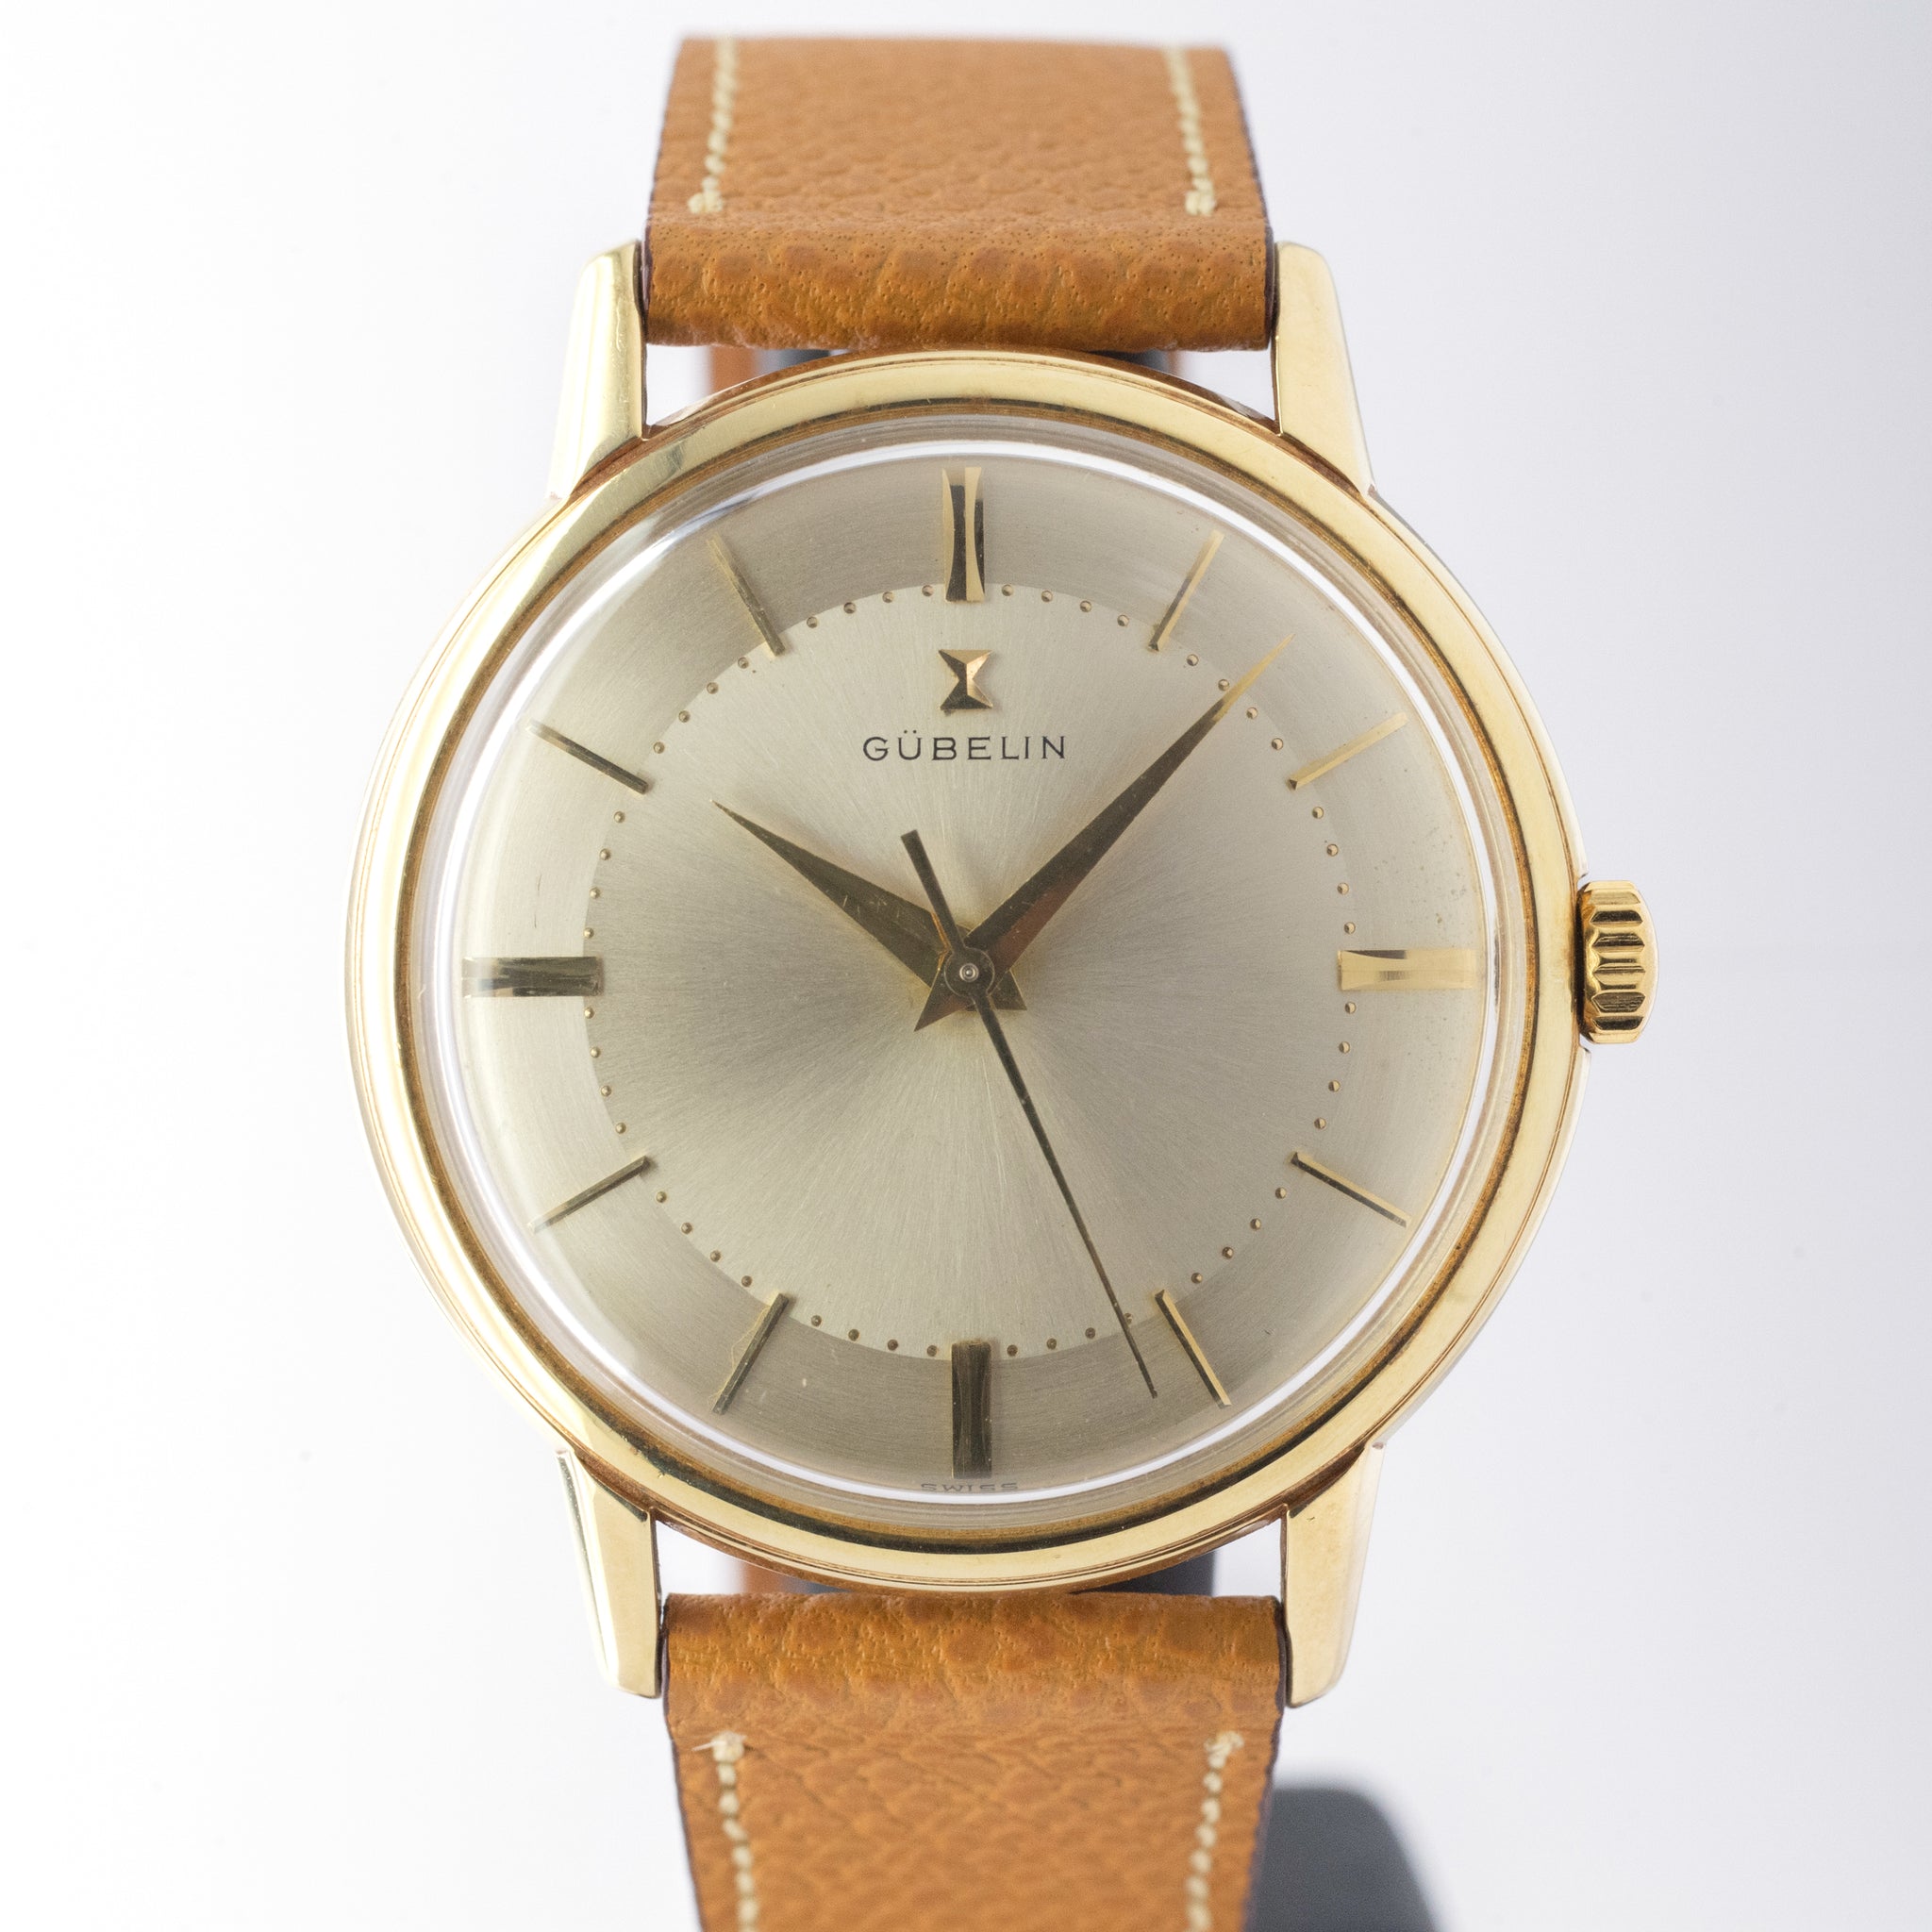 Gubelin ギュベリン ギュブラン 腕時計 アンティーク ヴィンテージパテックフィリップ 10780円